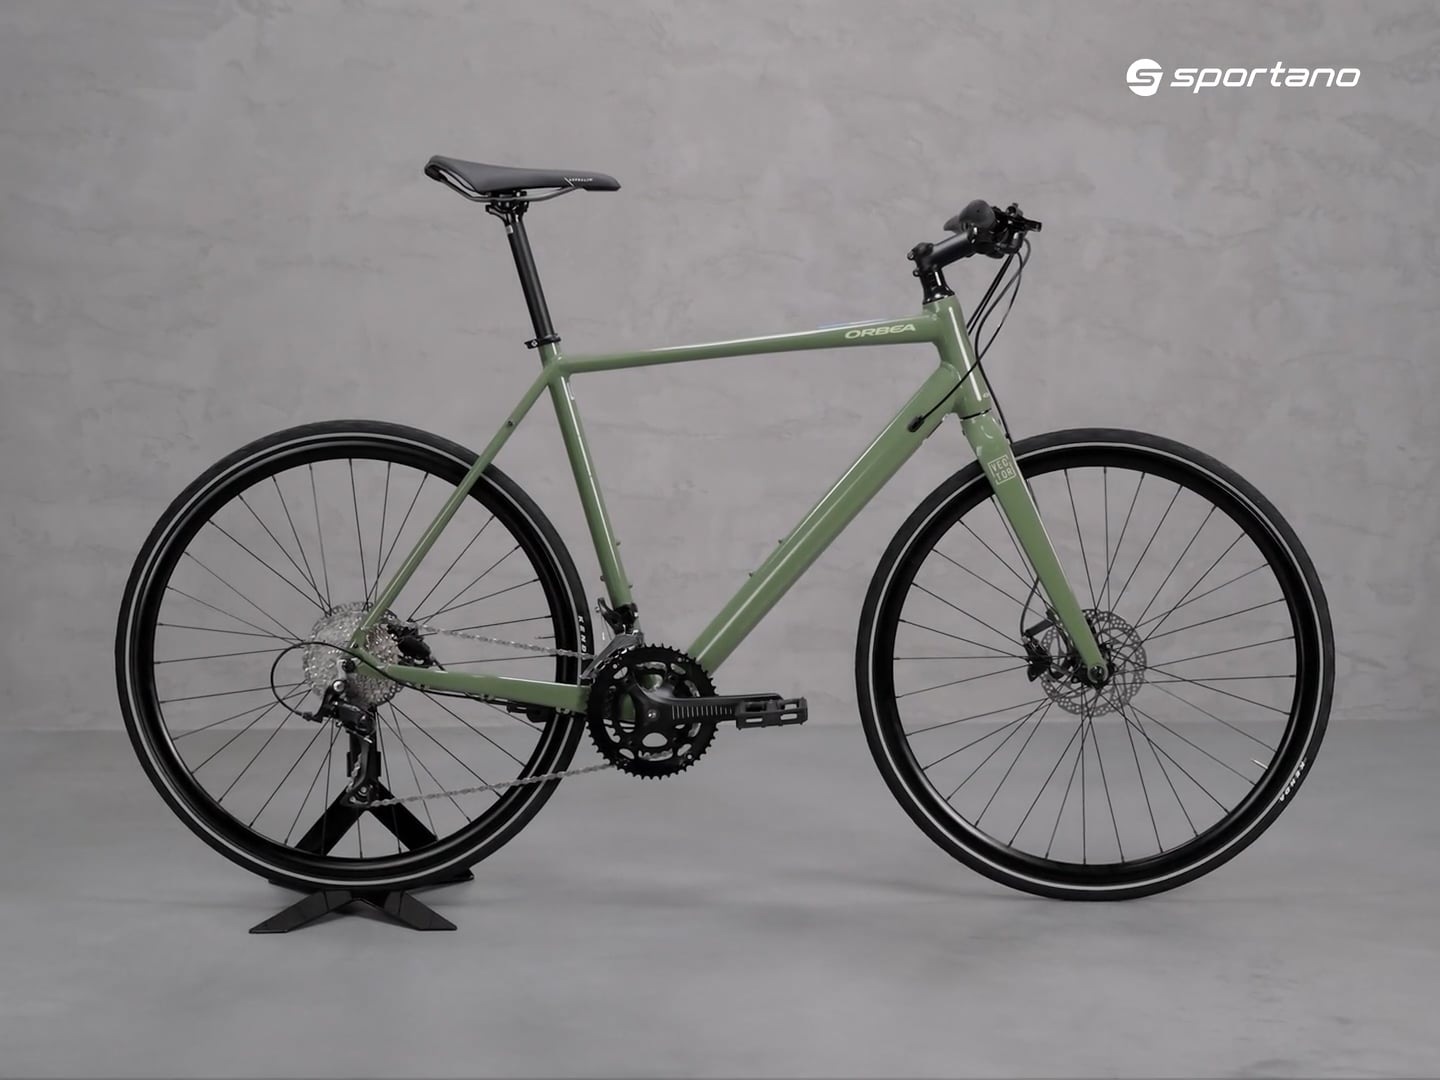 Ανδρικό ποδήλατο γυμναστικής Orbea Vector 20 πράσινο M40656RK